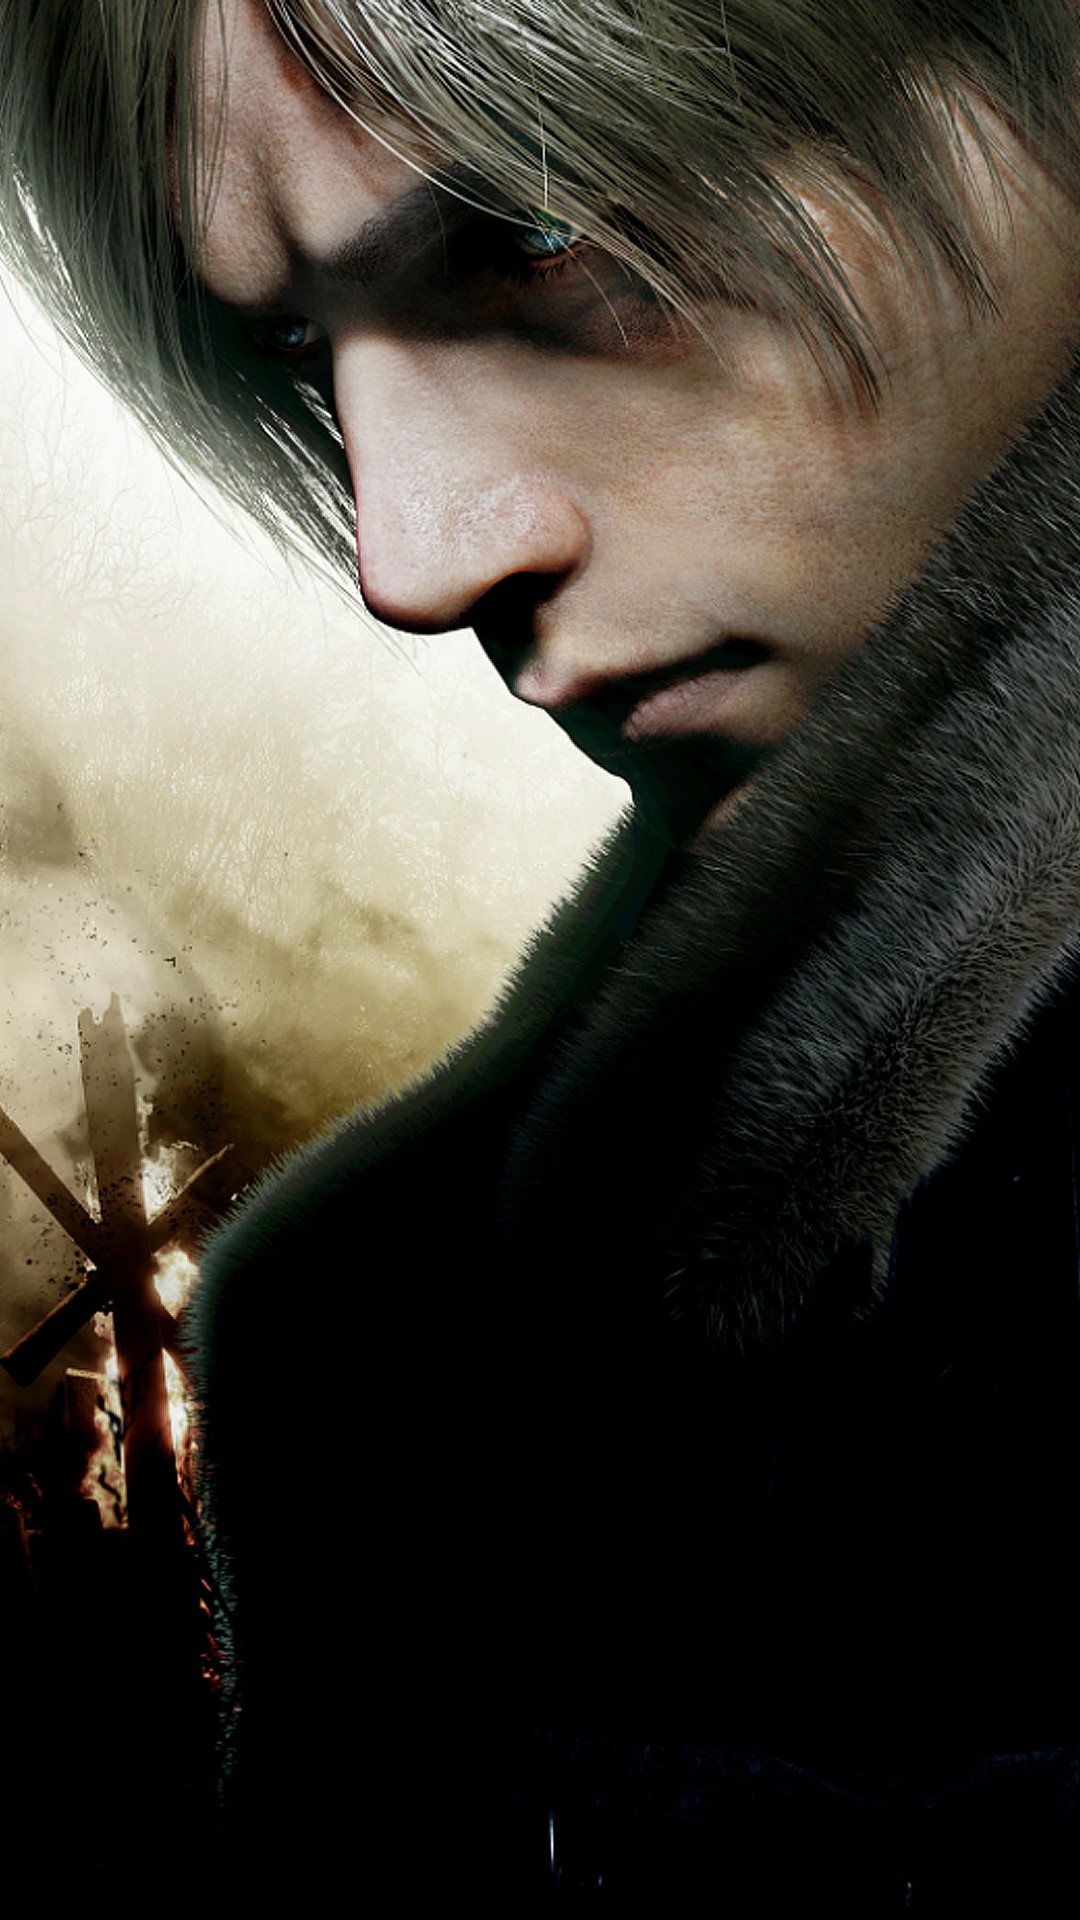 Resident Evil 4 Remake: Data de lançamento, plataformas, preço, trailers e  mais